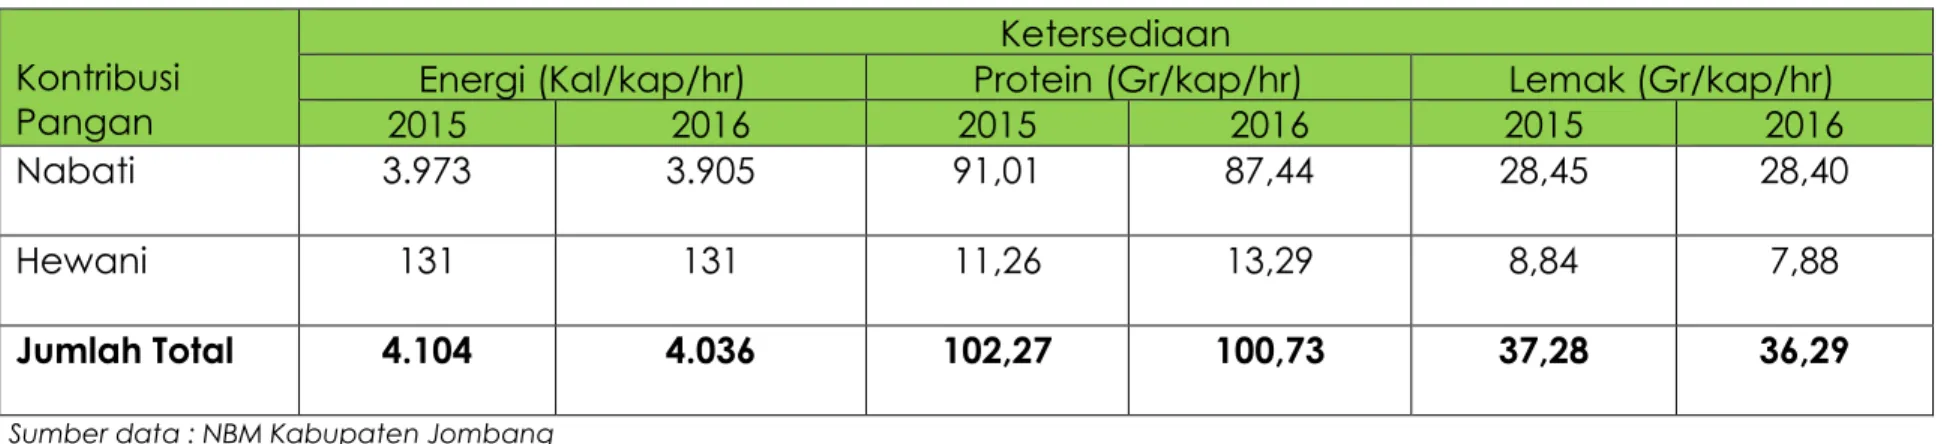 Tabel : 2.4  Ketersediaan  Energi dan Protein berdasarkan Neraca  Bahan Makanan (NBM) tahun 2 tahun terakhir 